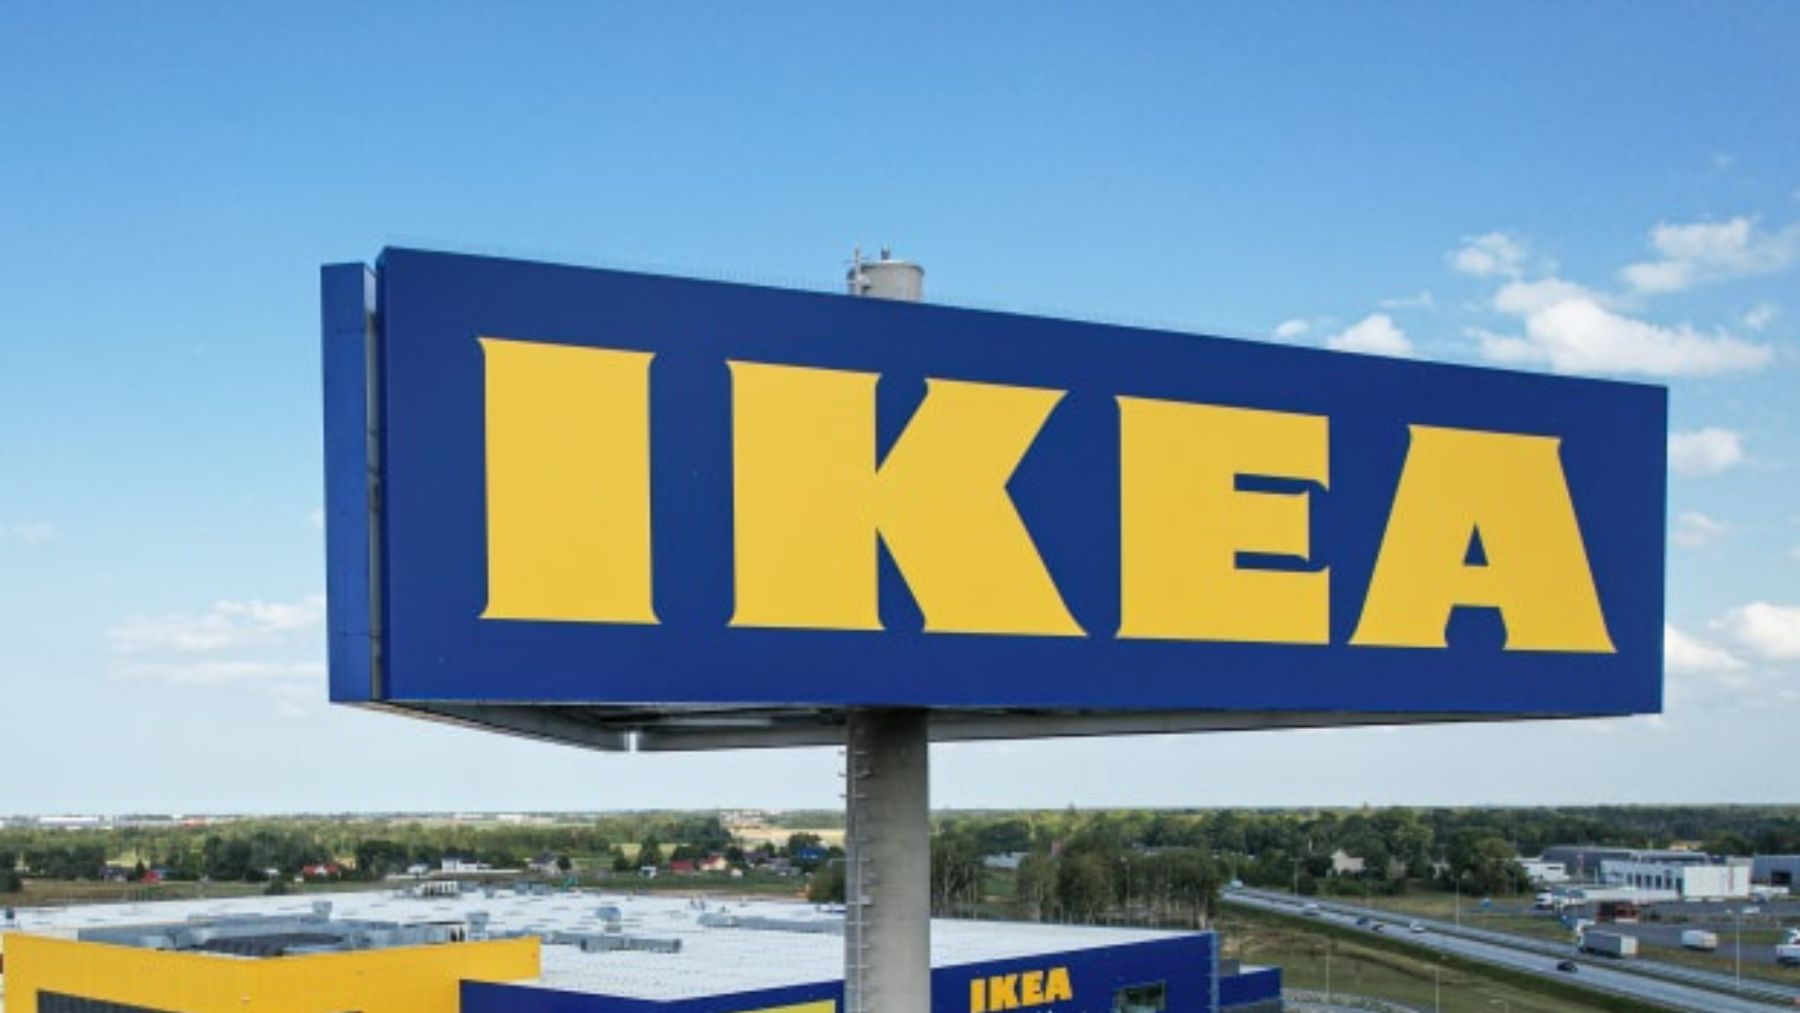 El surrealista nombre de esta tabla de Ikea que se ha vuelto viral en redes